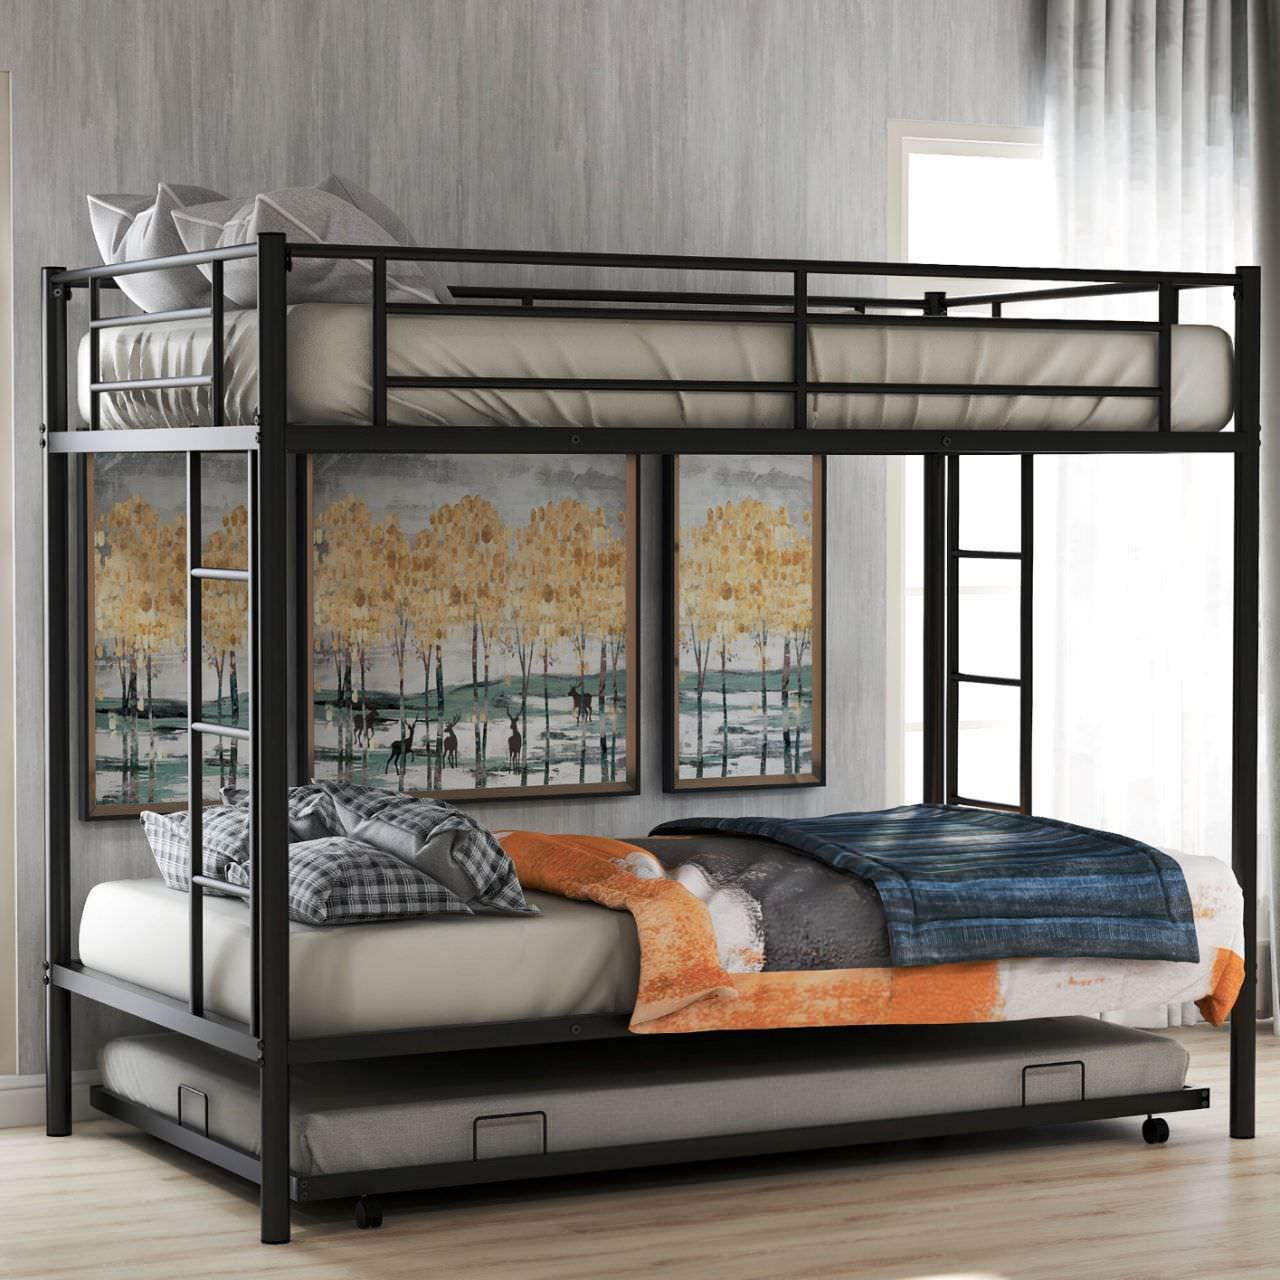 Thiết kế giường tầng truyền thống với khung sắt